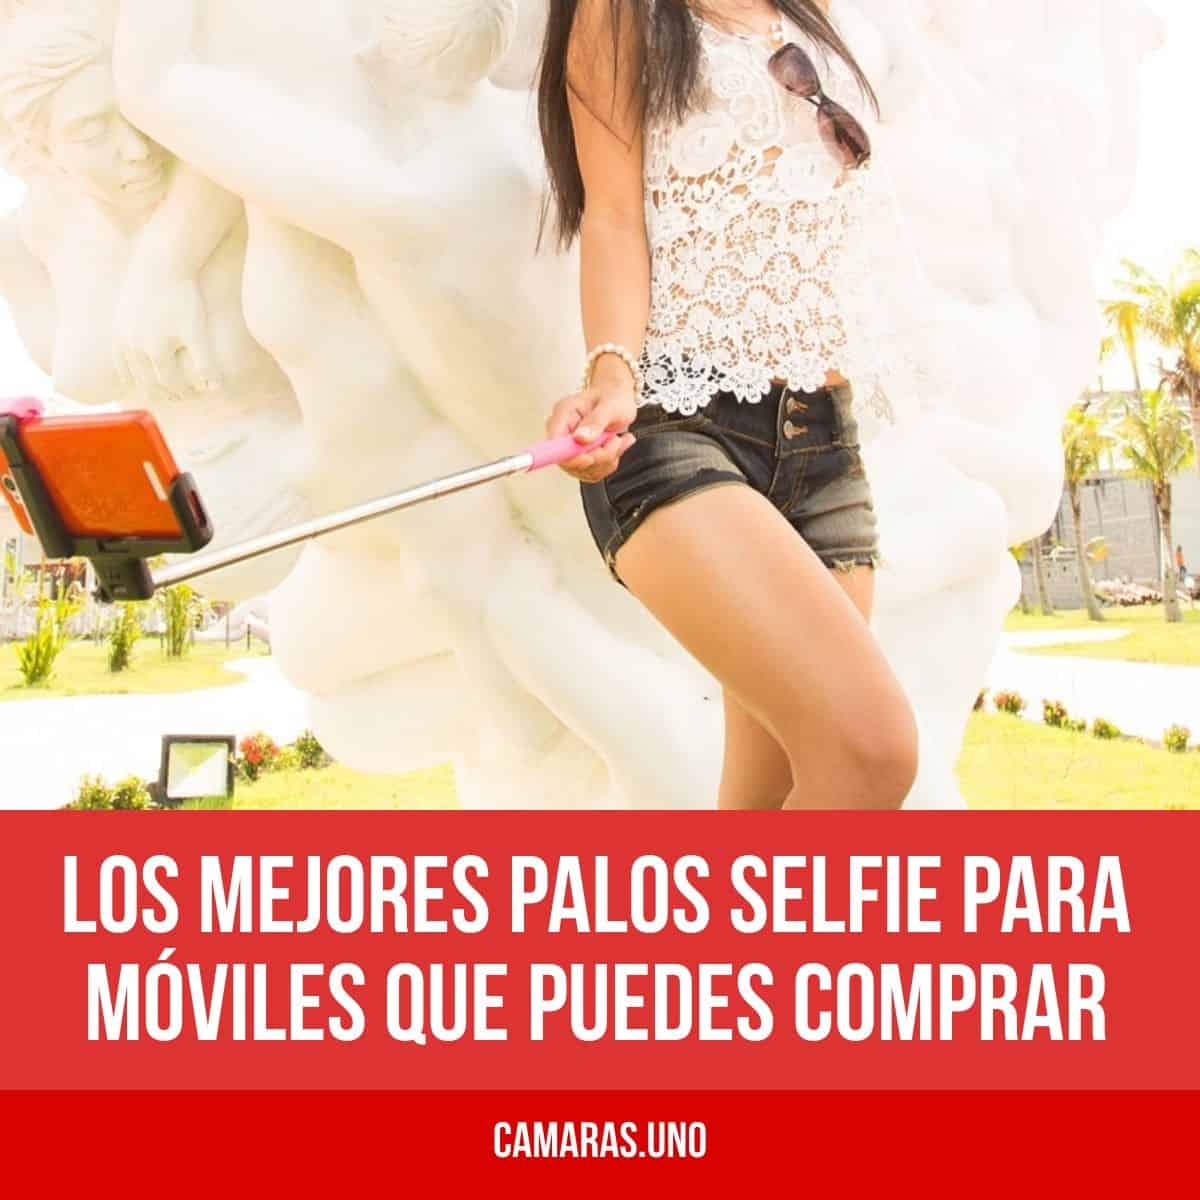 Los mejores palos selfie para móviles que puedes comprar